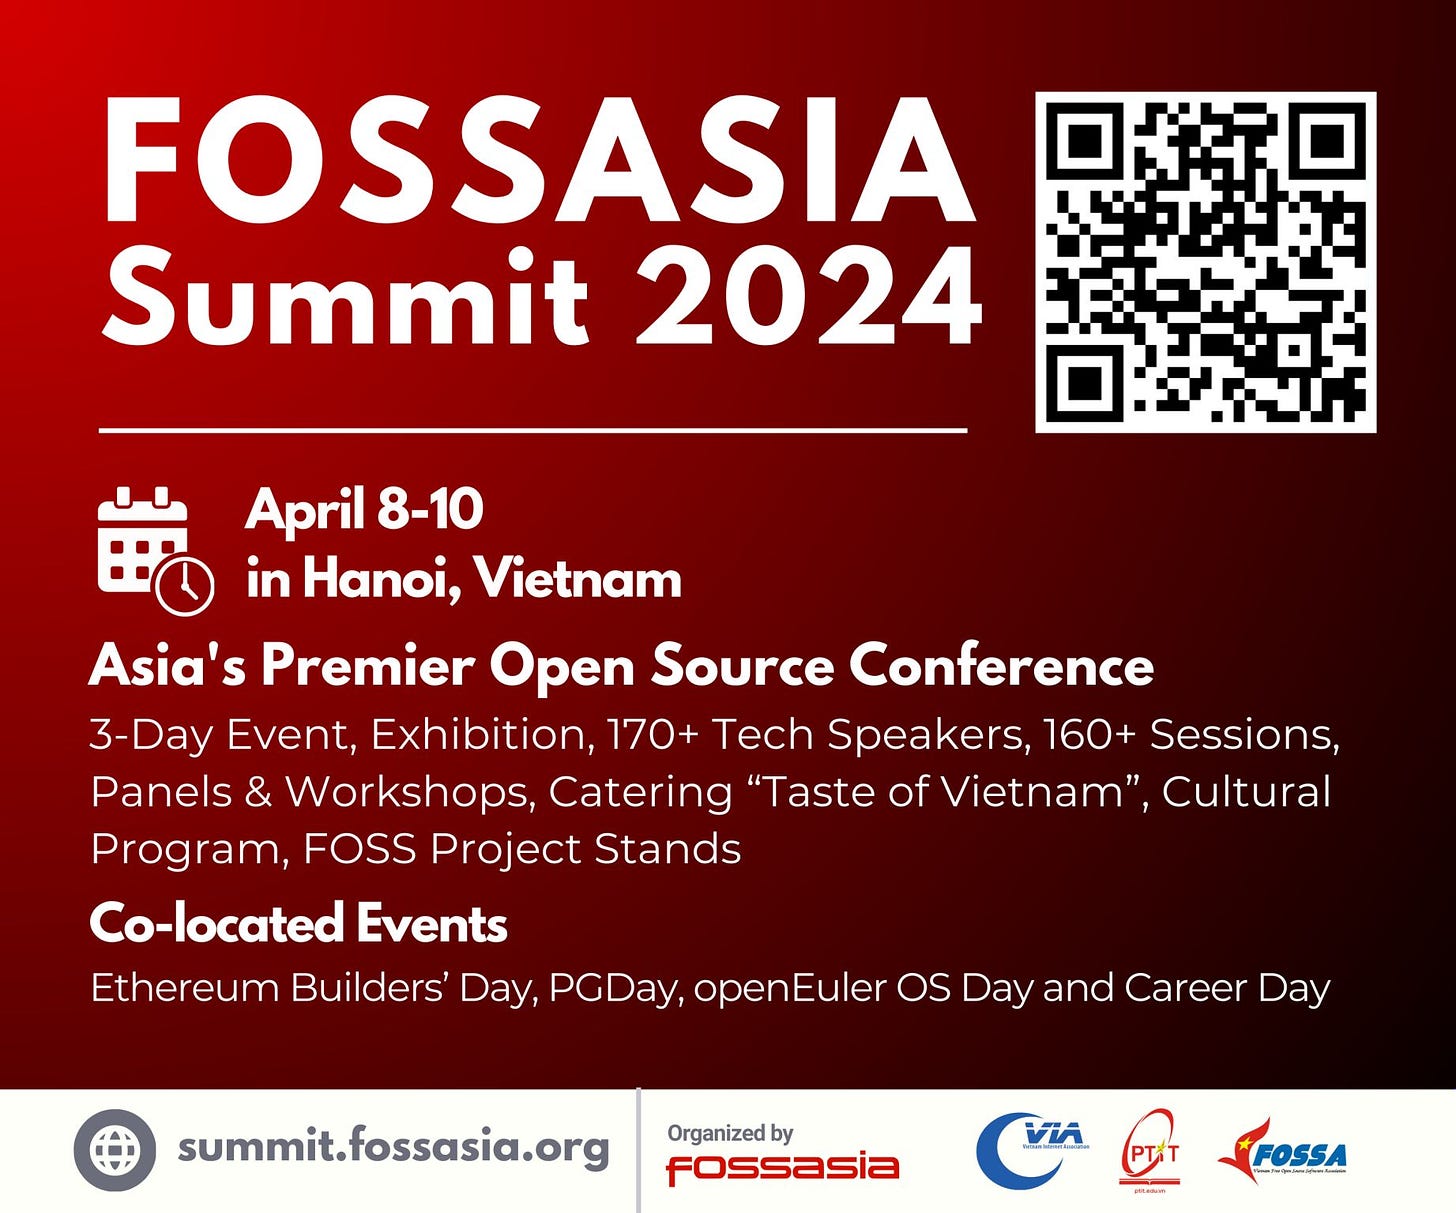 FOSSASIA Summit 2024 in Hanoi, Vietnam